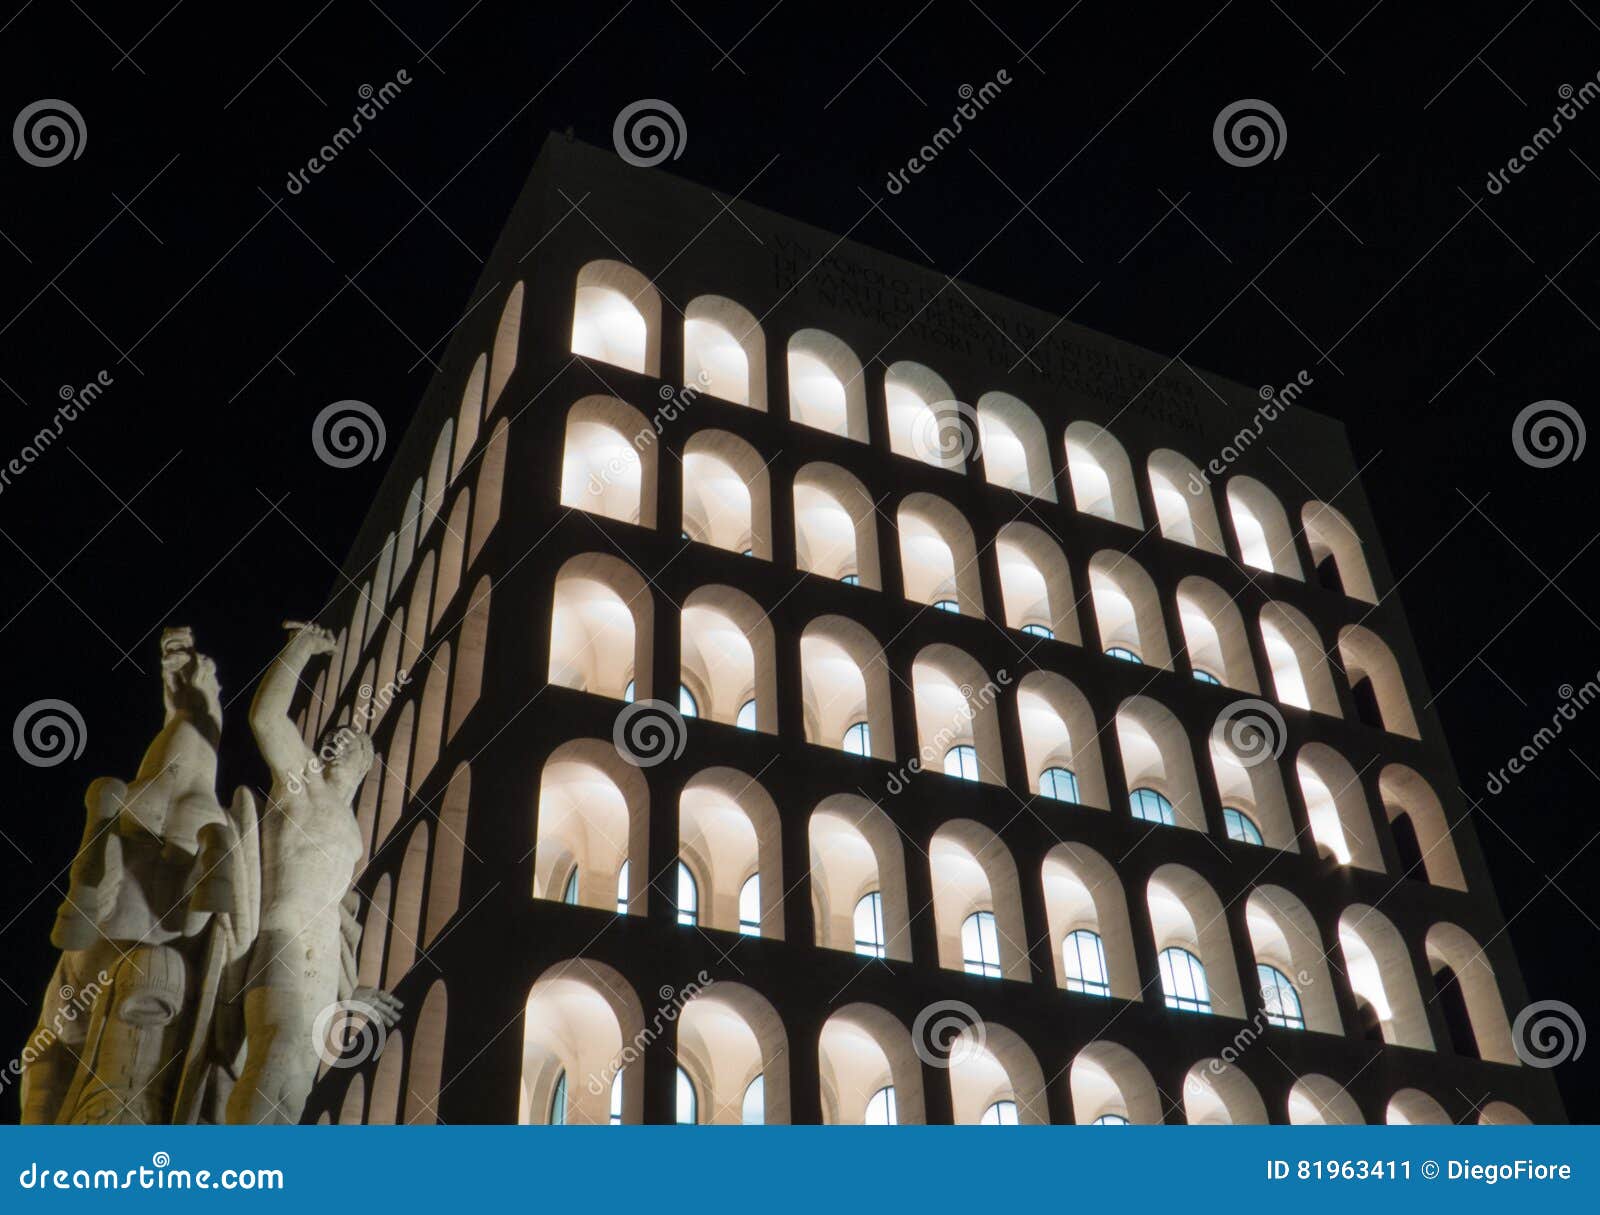 palazzo della civiltÃÂ  italiana, rome